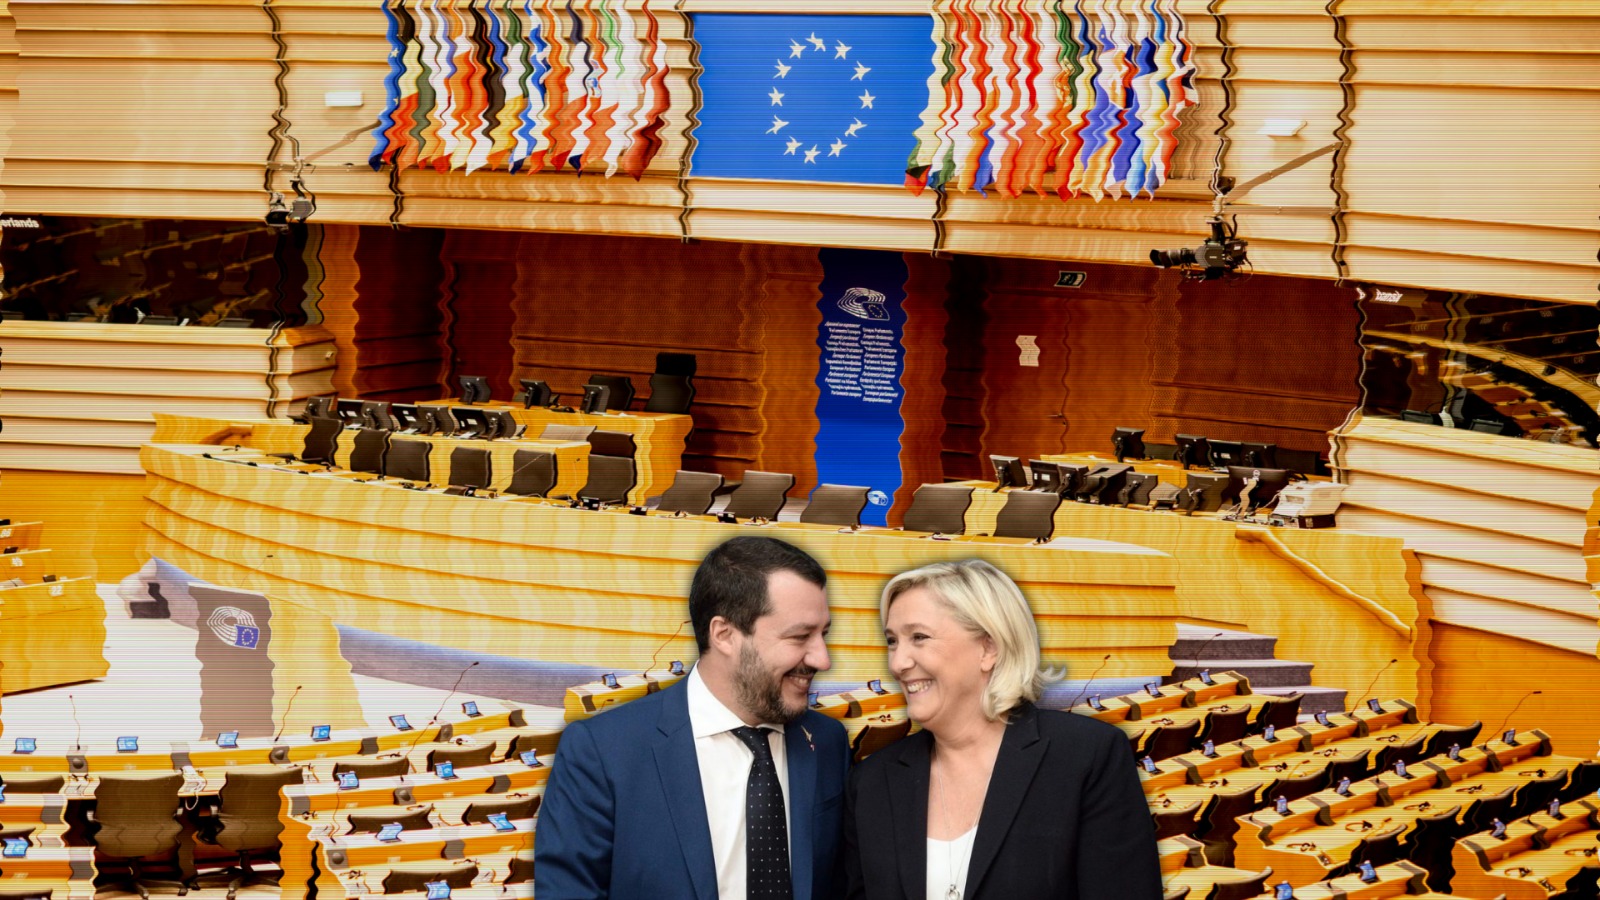 L’avanzata della destra nel Parlamento europeo